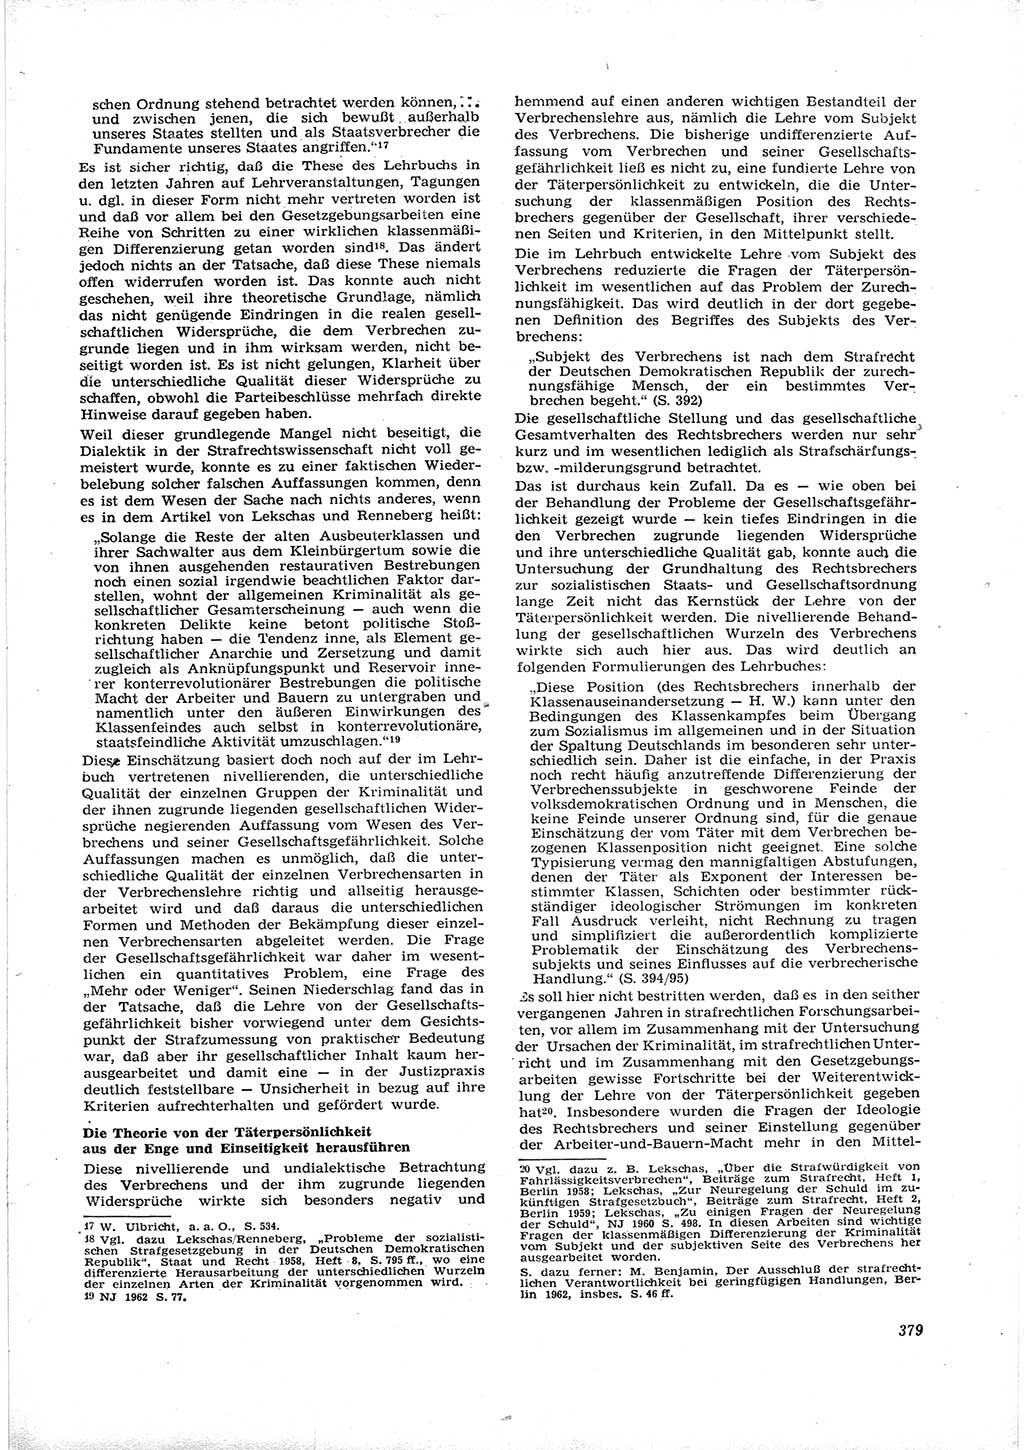 Neue Justiz (NJ), Zeitschrift für Recht und Rechtswissenschaft [Deutsche Demokratische Republik (DDR)], 16. Jahrgang 1962, Seite 379 (NJ DDR 1962, S. 379)